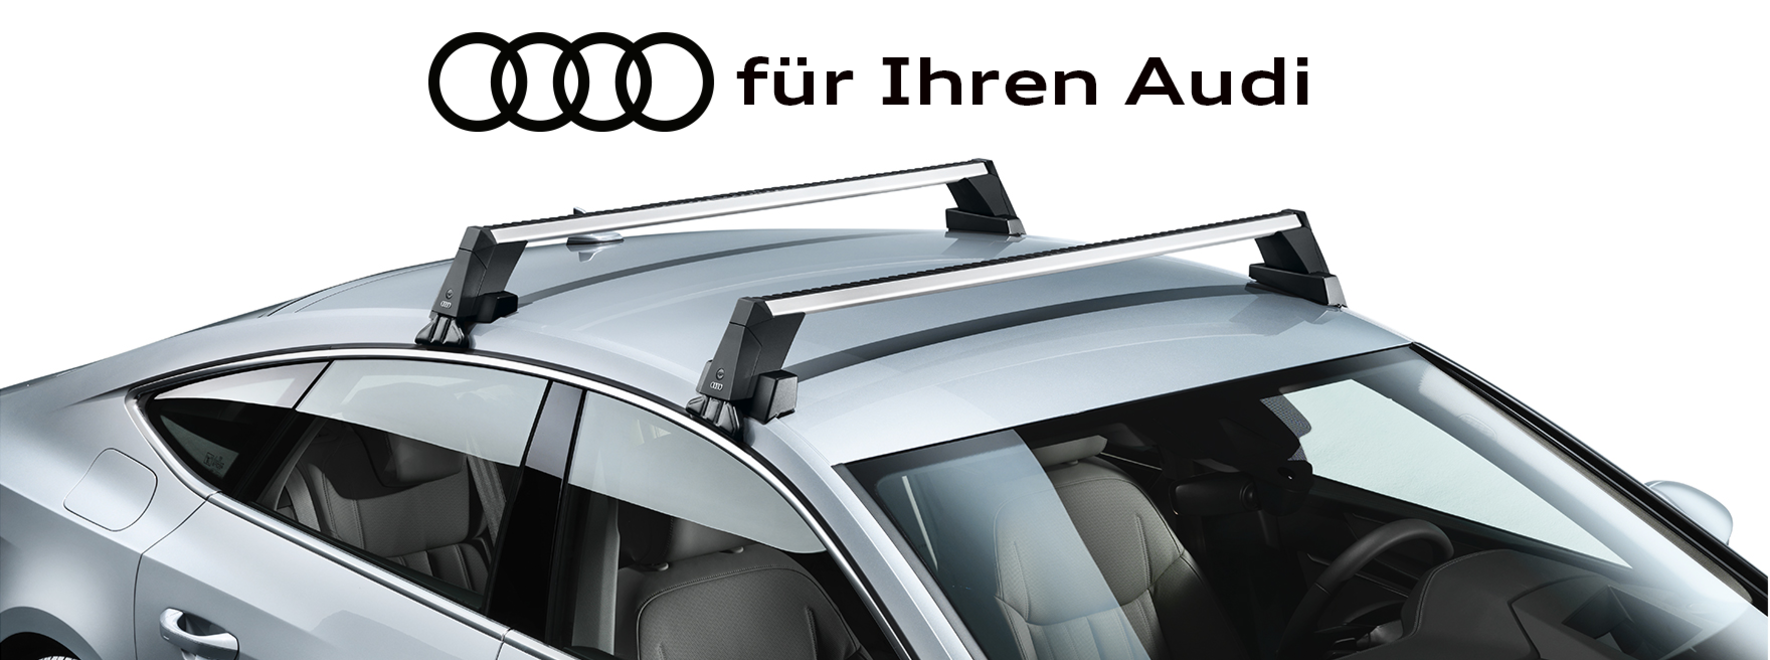 Grundträger von Audi Original Zubehör für Ihren Audi | Transport - Mit Audi Zubehör praktische Transportlösungen für Ihren Audi entdecken